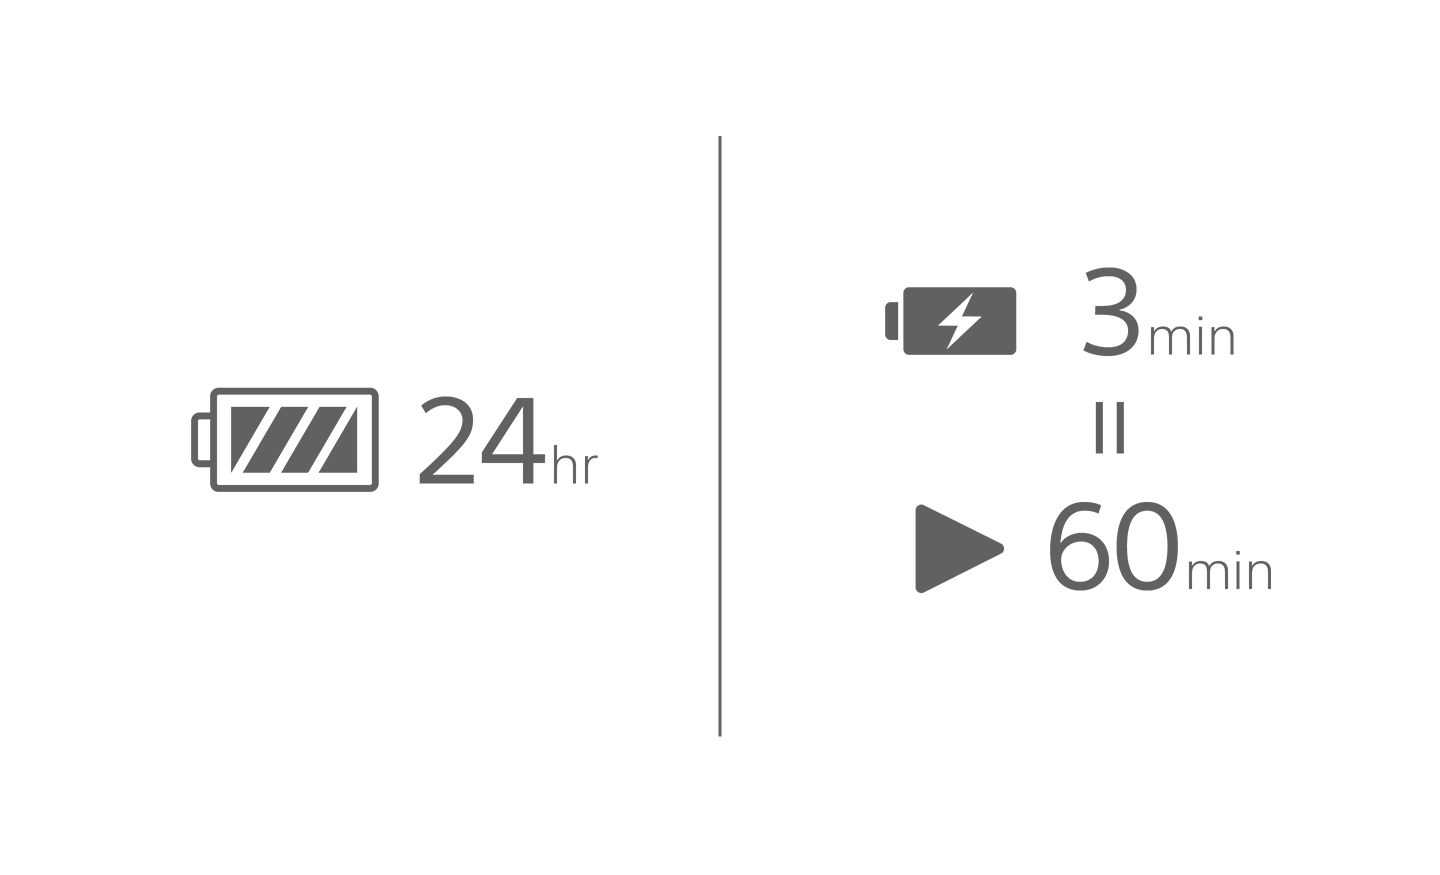 Obrázok ikony batérie s textom 24 h, ďalšia batéria so symbolom nabíjania s textom 3 min nad ikonou prehrávania s textom 60 min